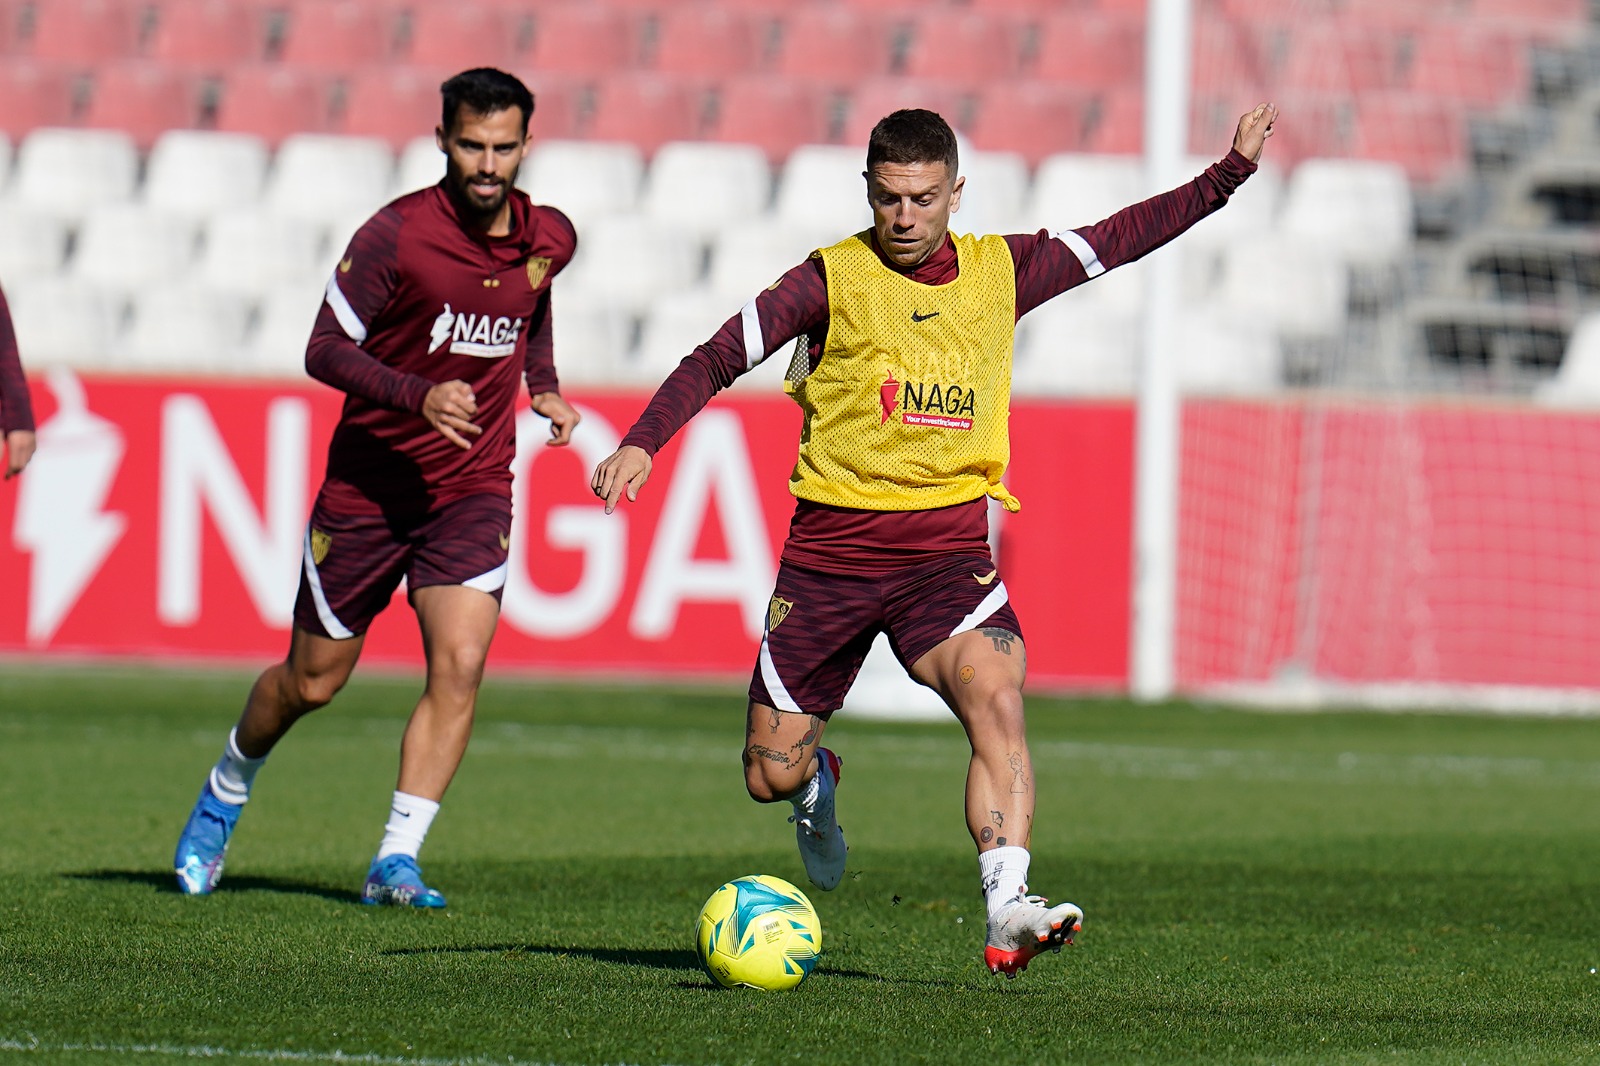 Sevilla FC training 4 de november 